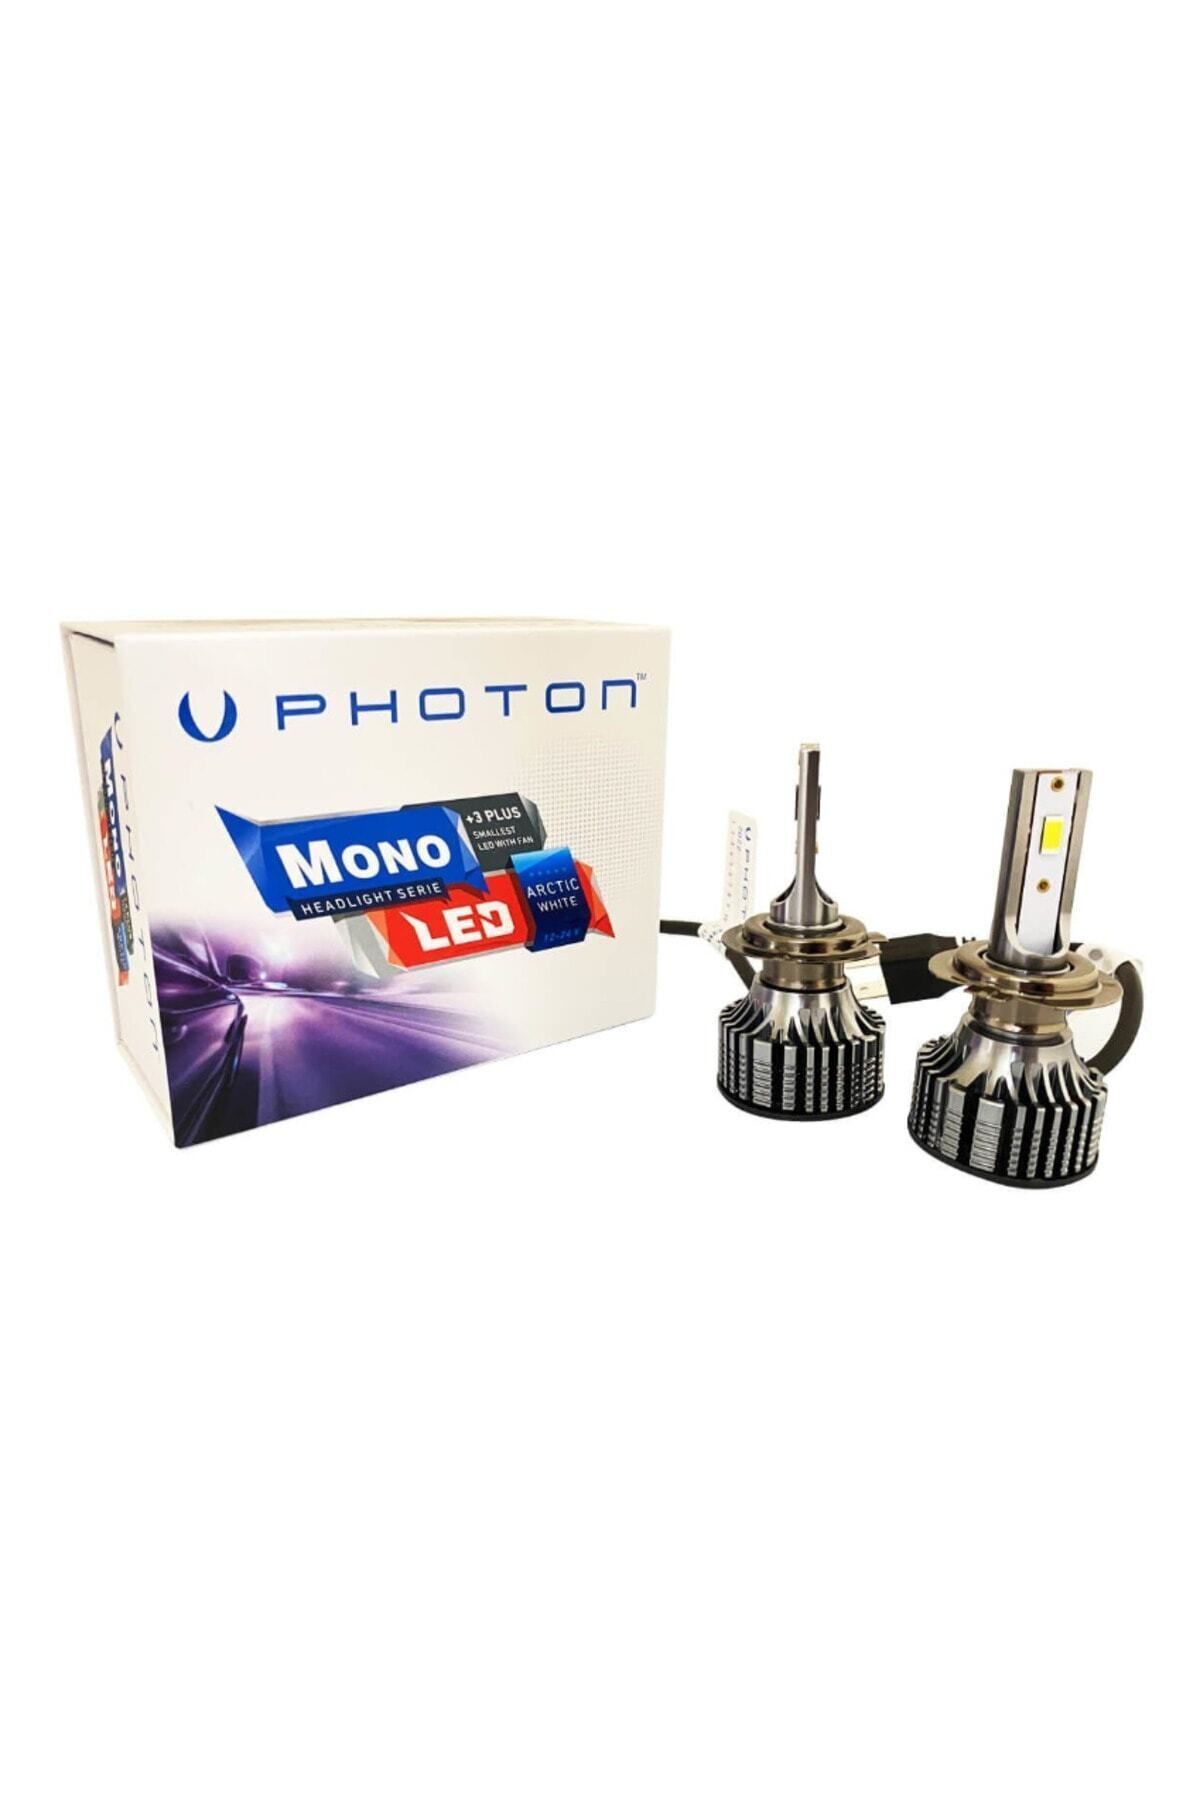 Photon Mono Serisi Articwhite Led Xenon H7